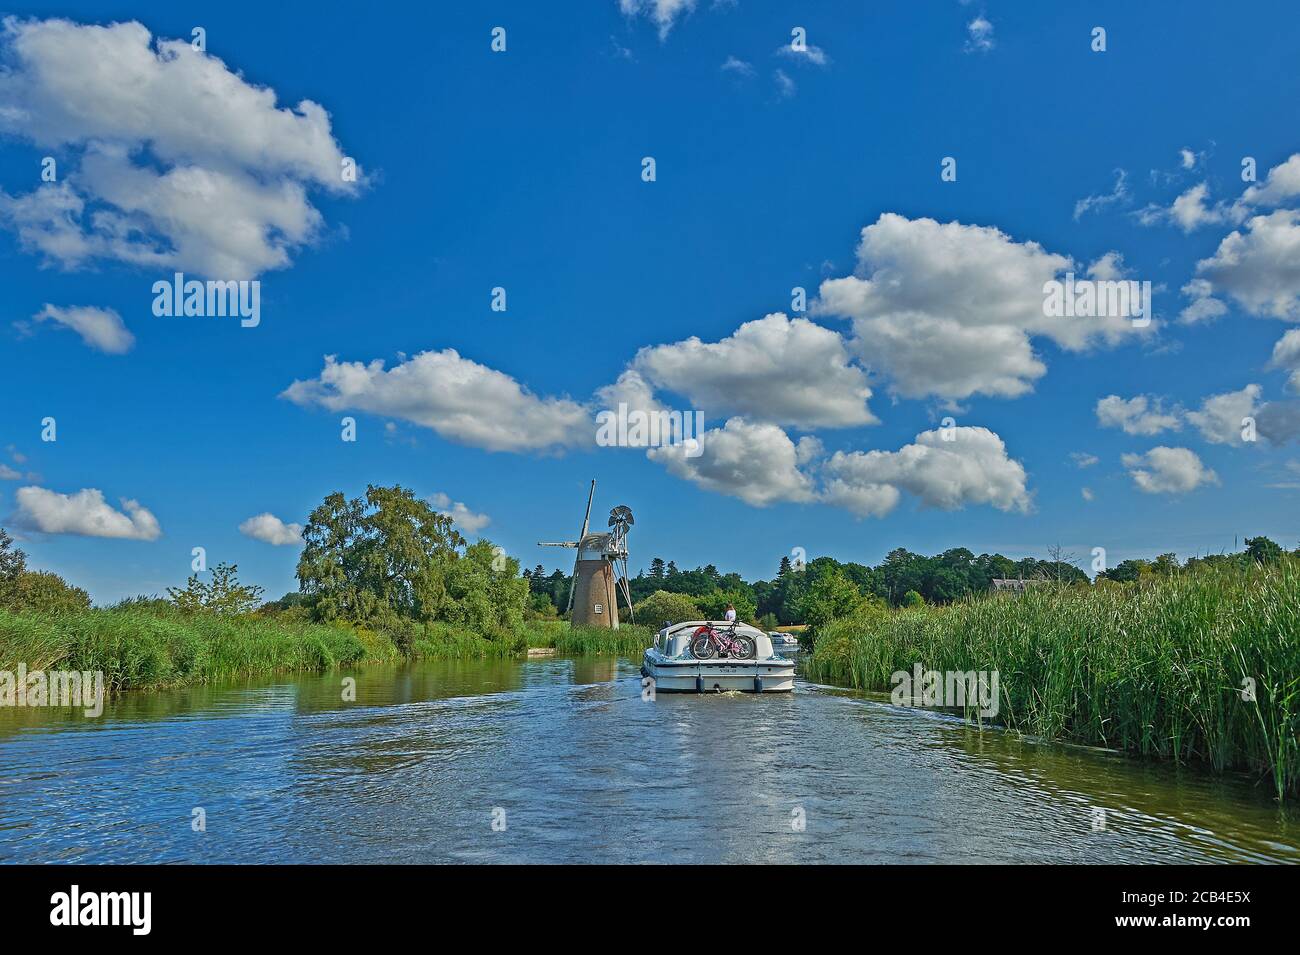 Turf Fen Windmühle am Ufer des Flusses Ant, Norfolk Broads, Norfolk, England Stockfoto